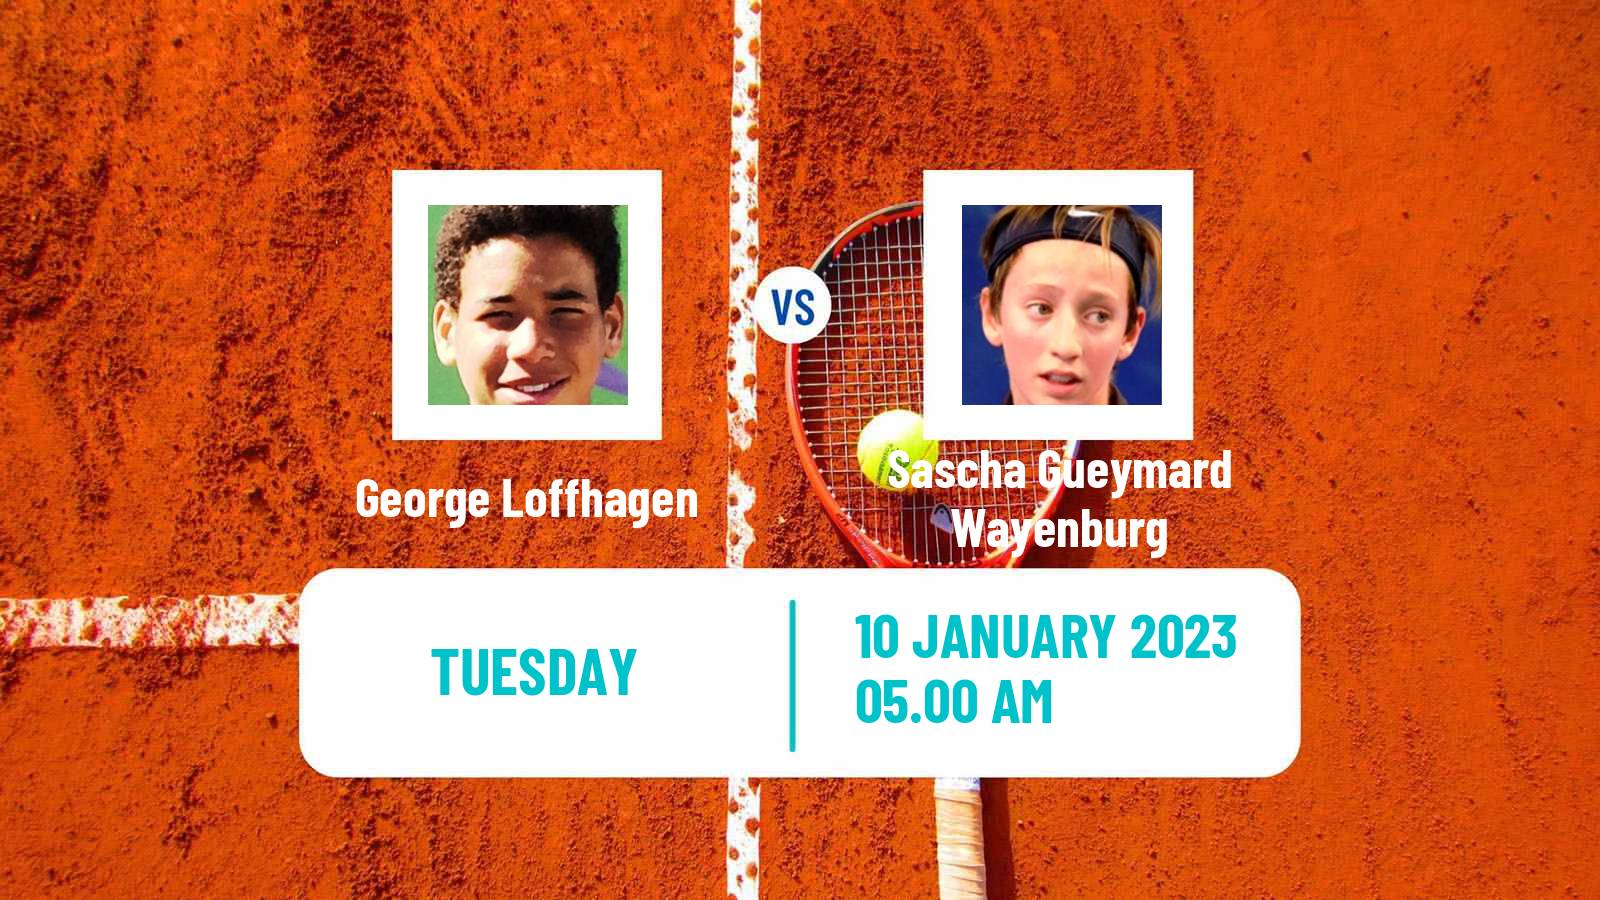 Tennis ITF Tournaments George Loffhagen - Sascha Gueymard Wayenburg